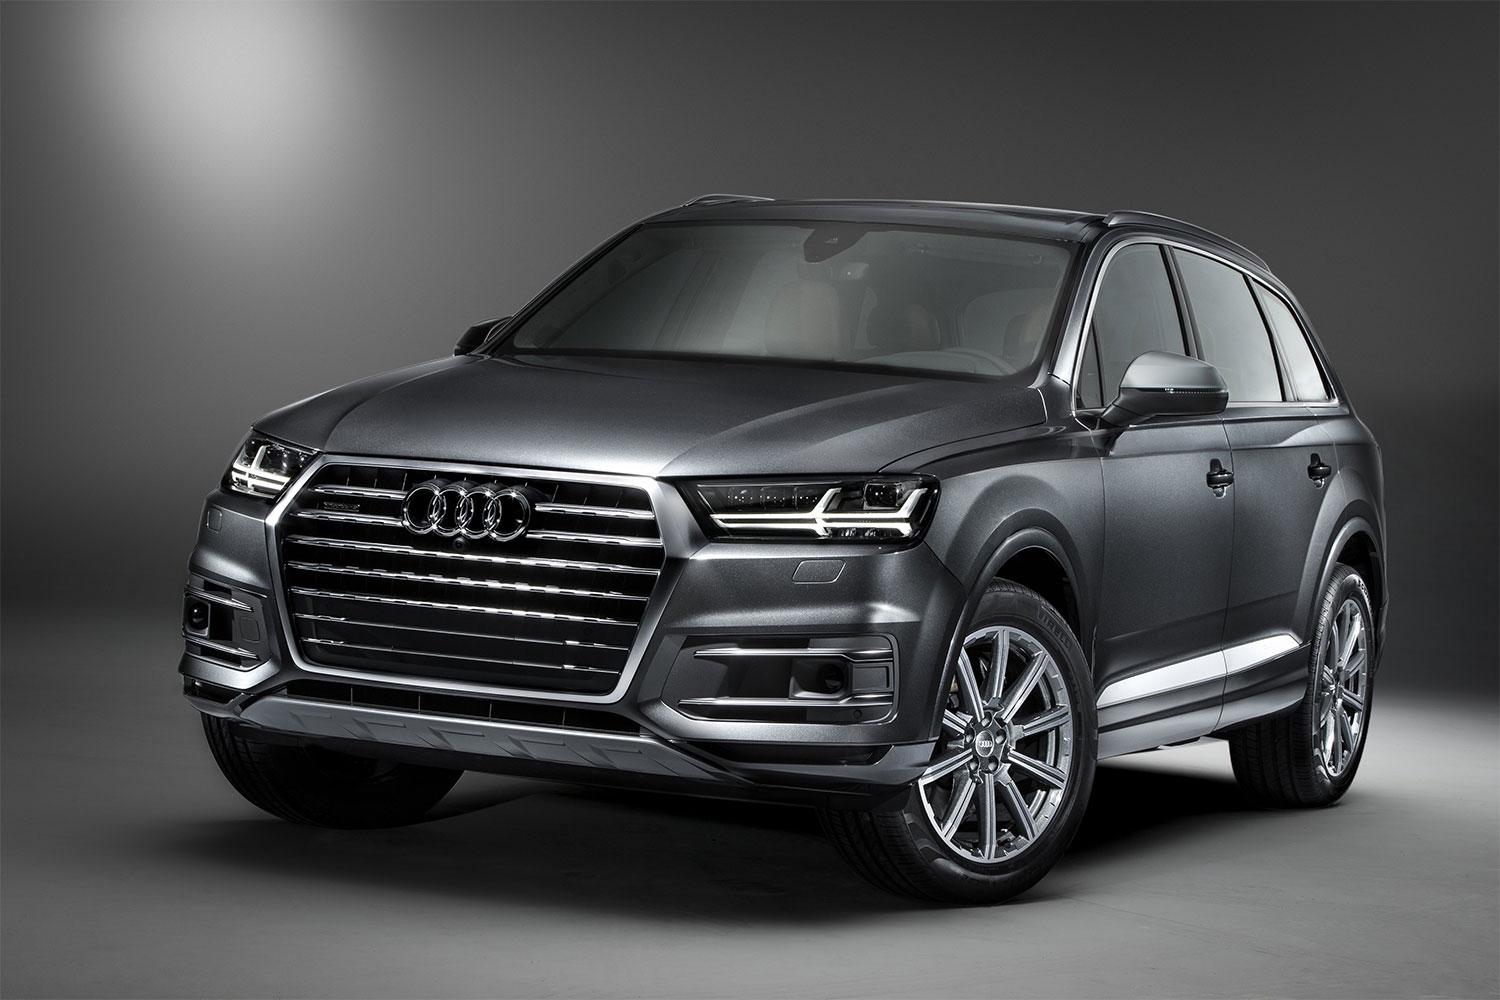 Audi reveals its diesel plugin hybrid SUV, the Q7 etron quattro